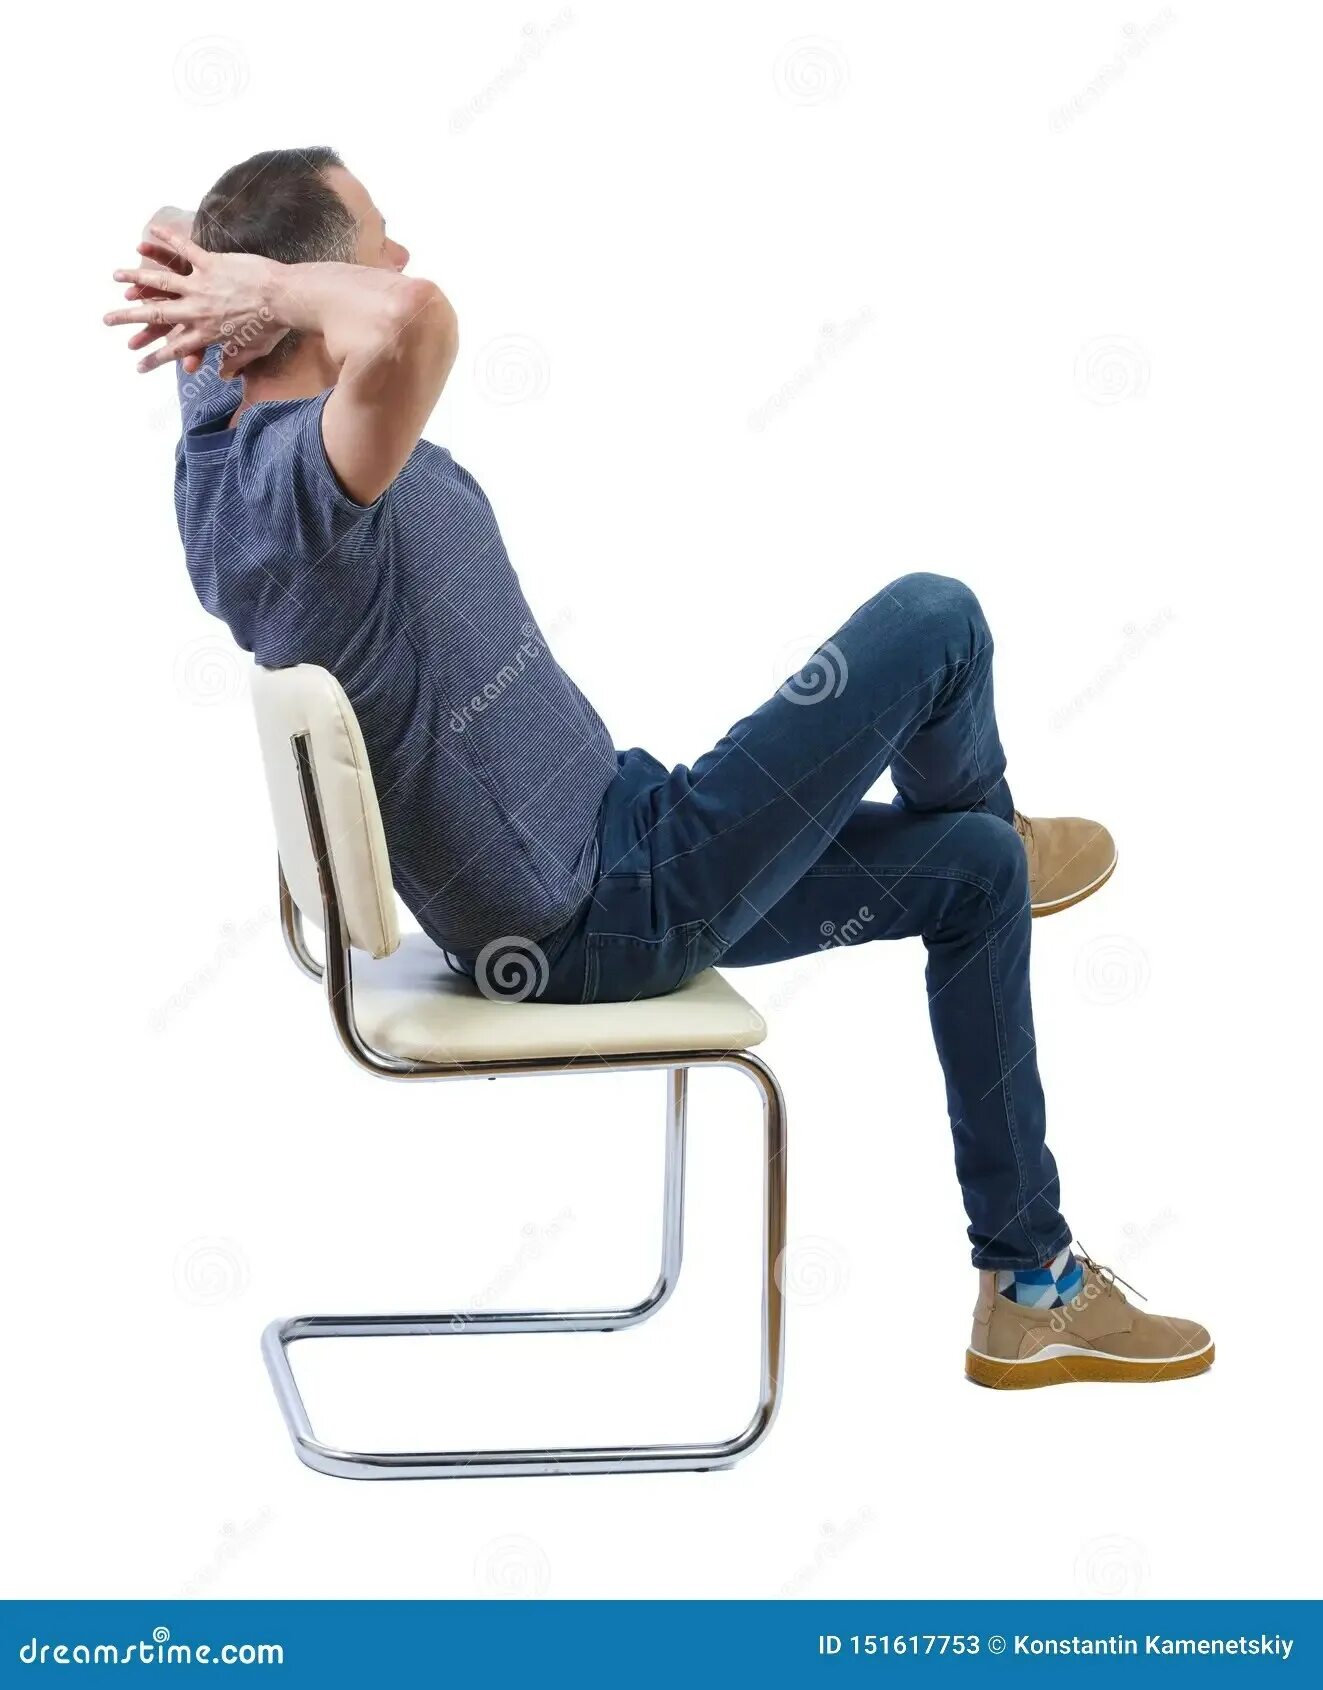 Человек падает со стула. Спрыгивает со стула. Мужик падает со стула. Виды сидячих людей на стуле.